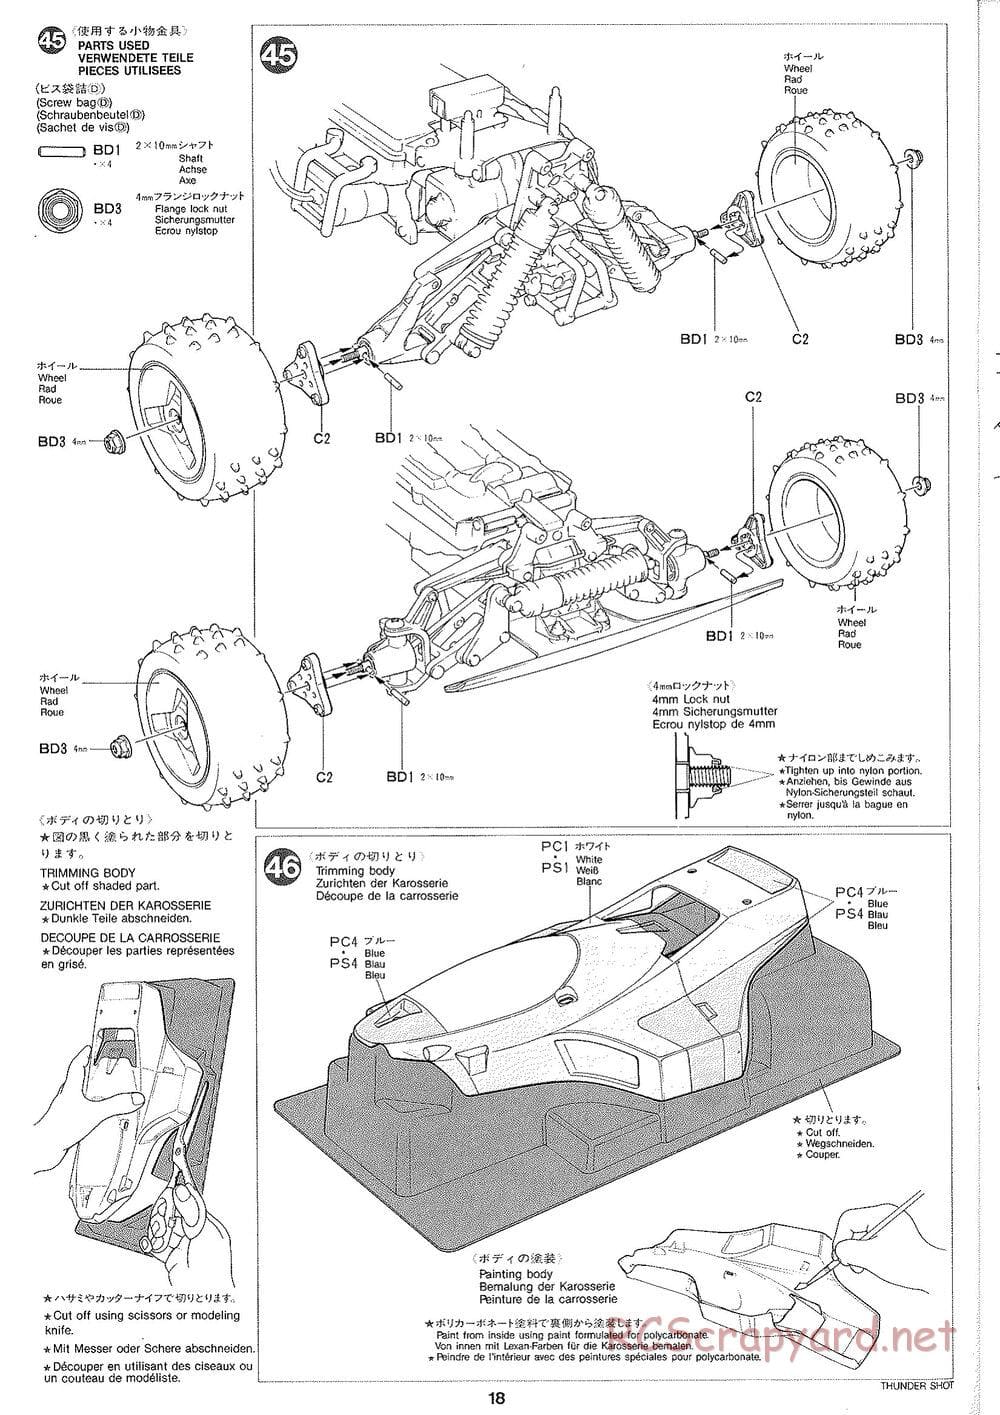 Tamiya - Thunder Shot - TS1 Chassis - Manual - Page 19